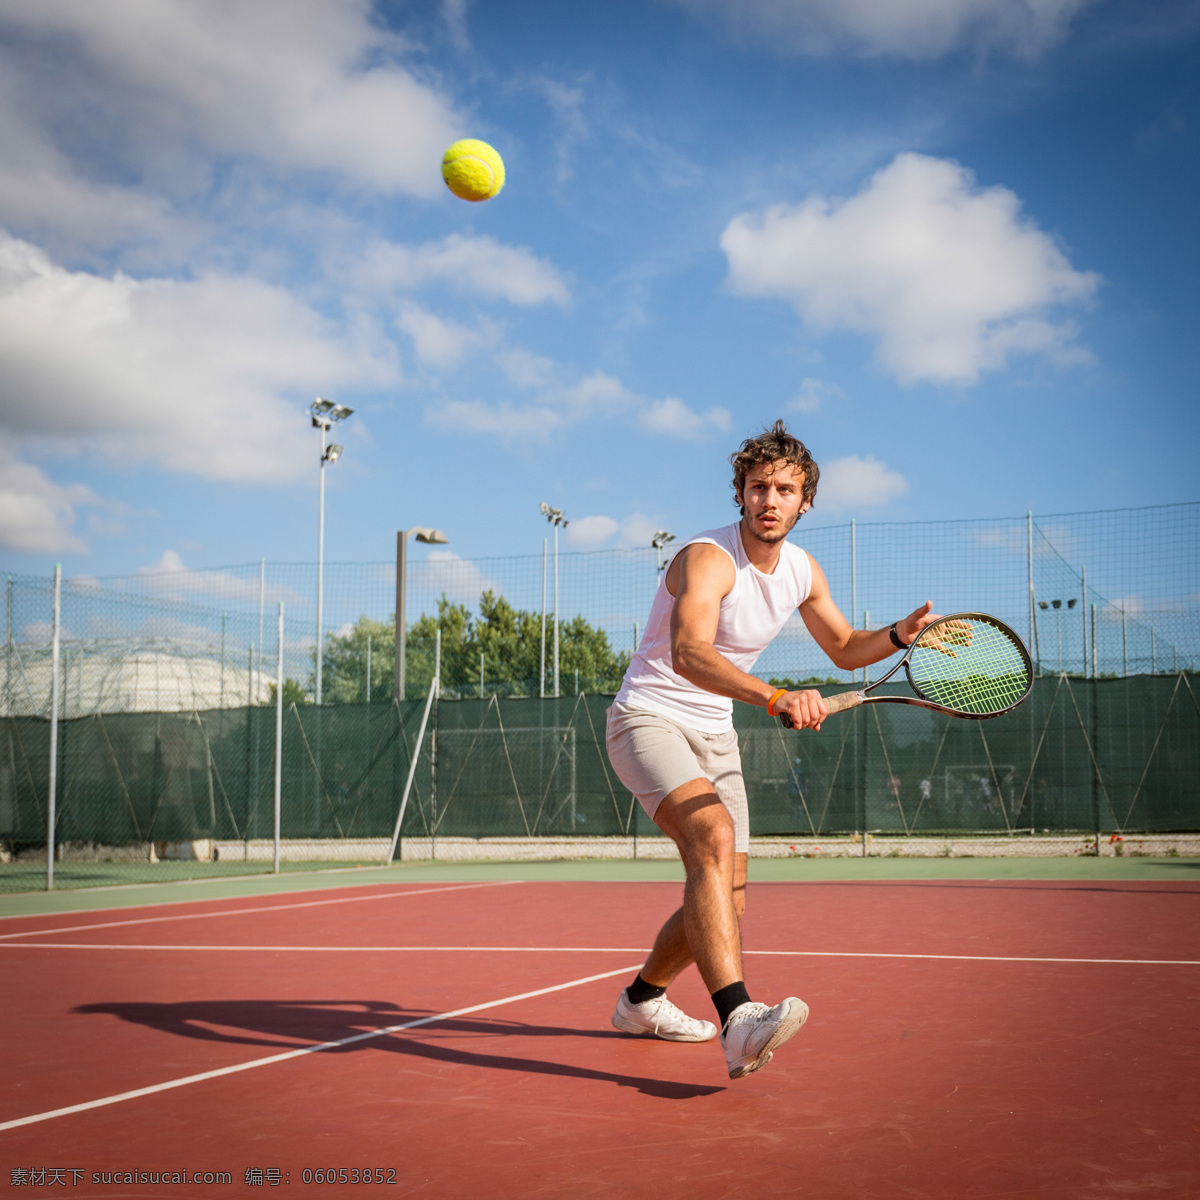 打球 时尚男人 网球广告 网球素材 体育 运动 健身 男性 人物 体育运动 生活百科